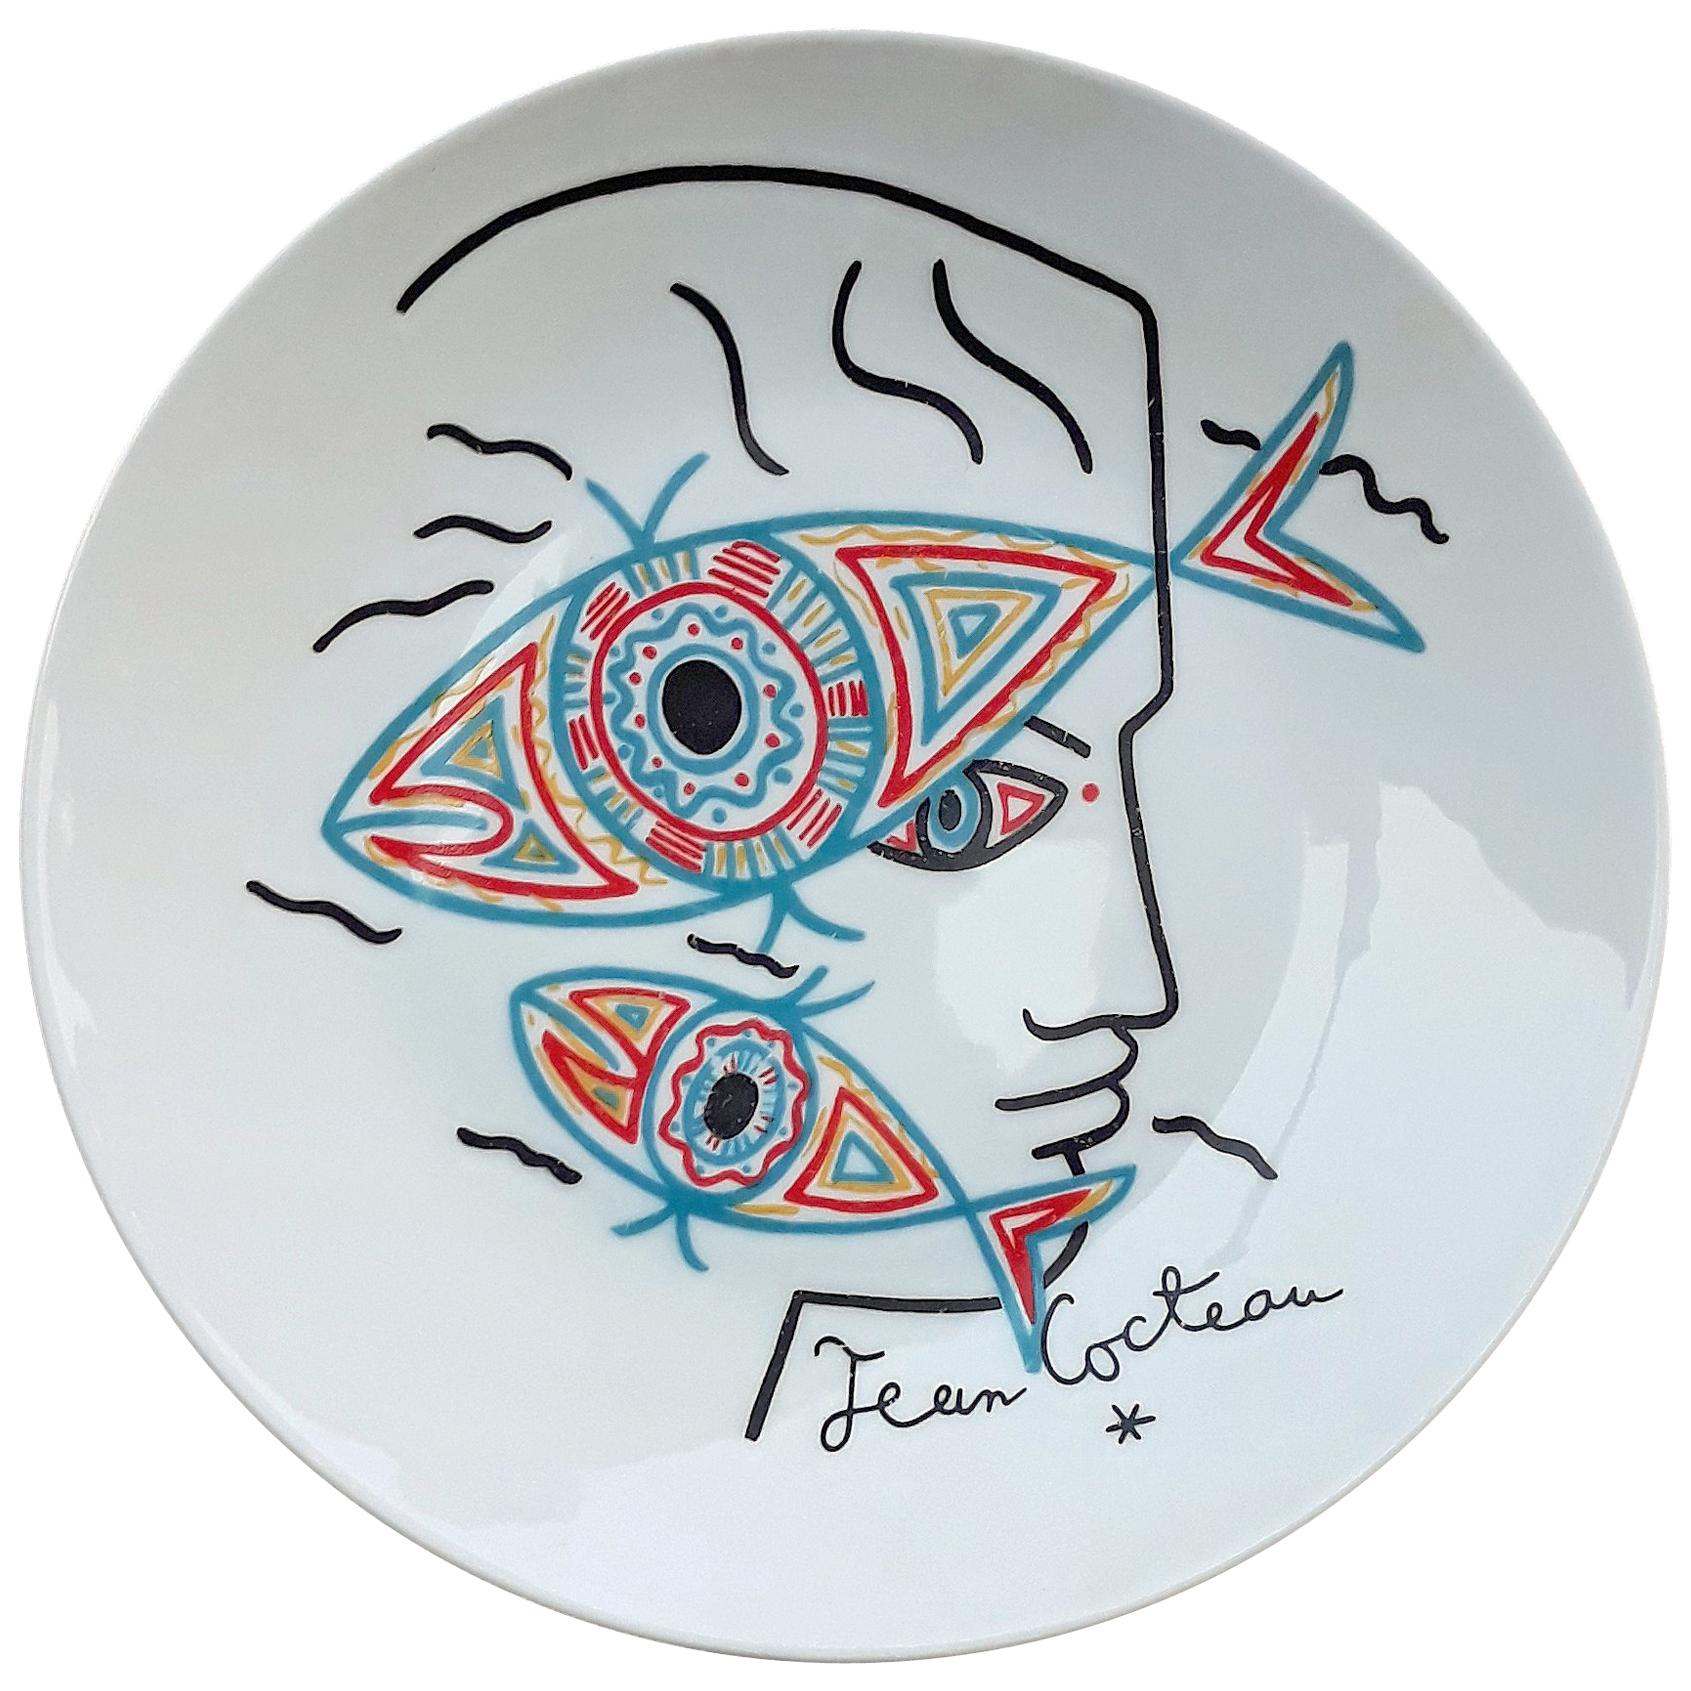 Cocteau Jean Limoges Porcelain Plate, Signed